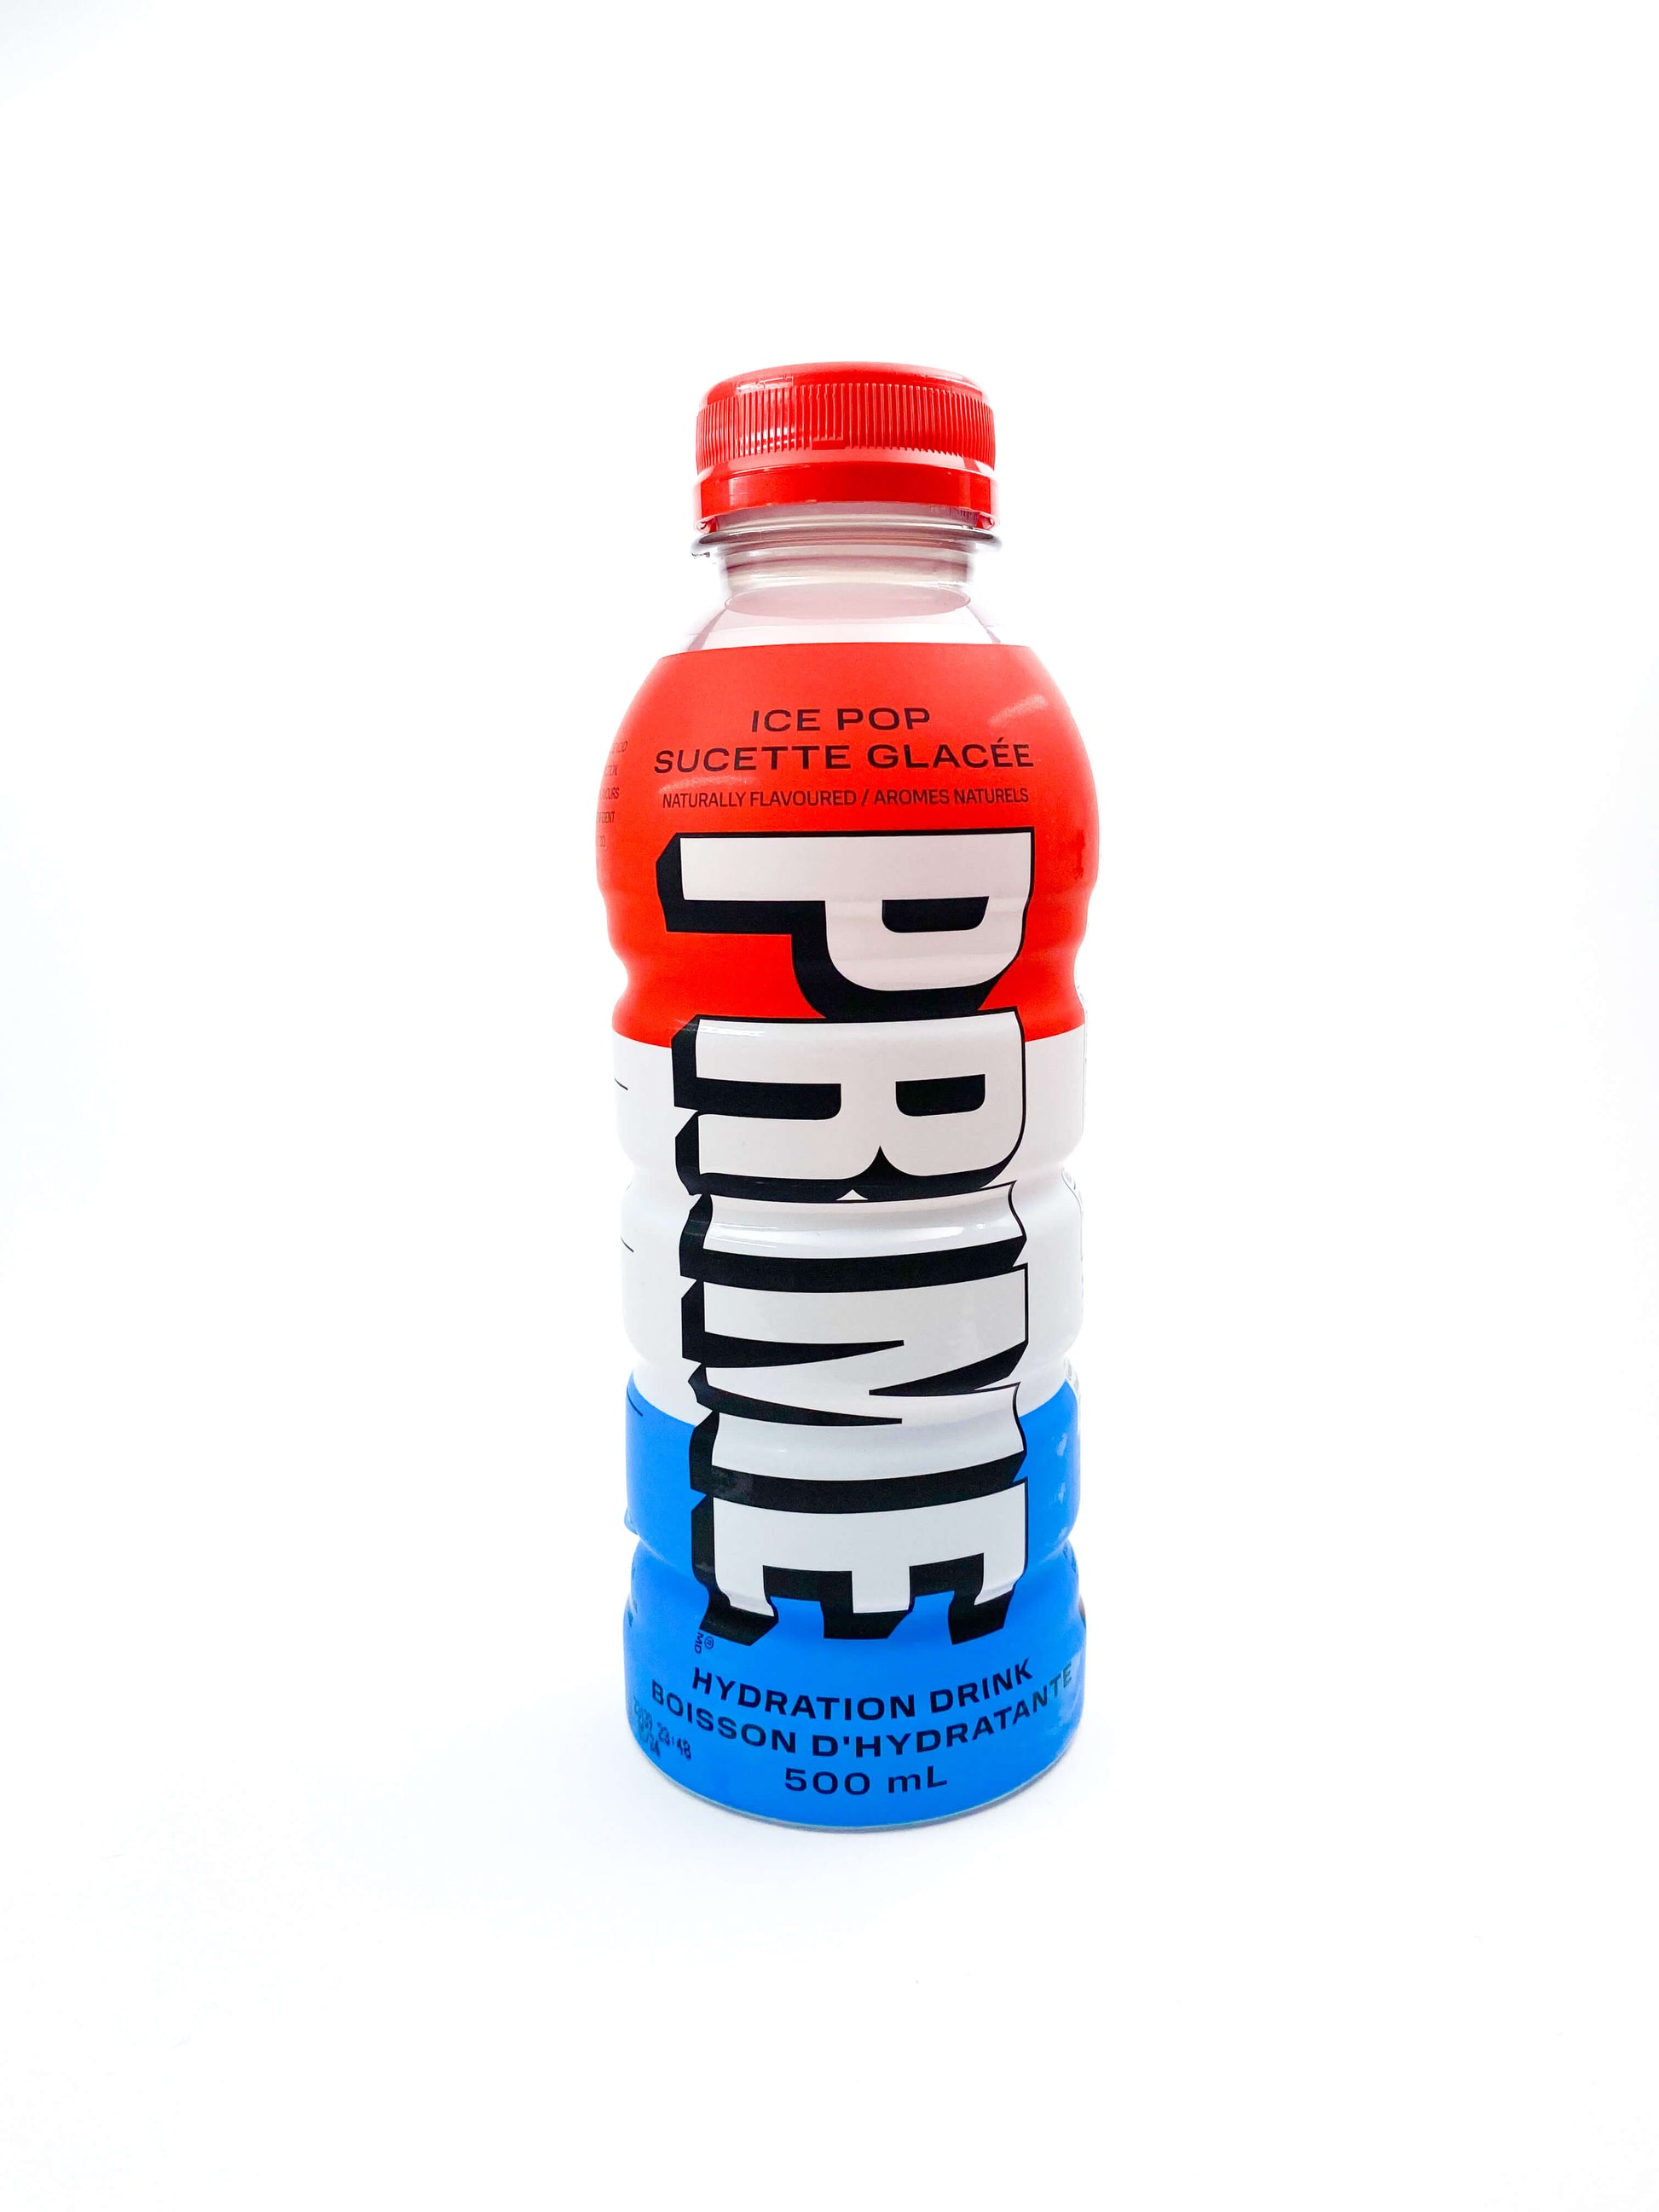 Frontansicht des amerikanischen Influencer Getränks Prime Ice Pop in der 500ml Flasche